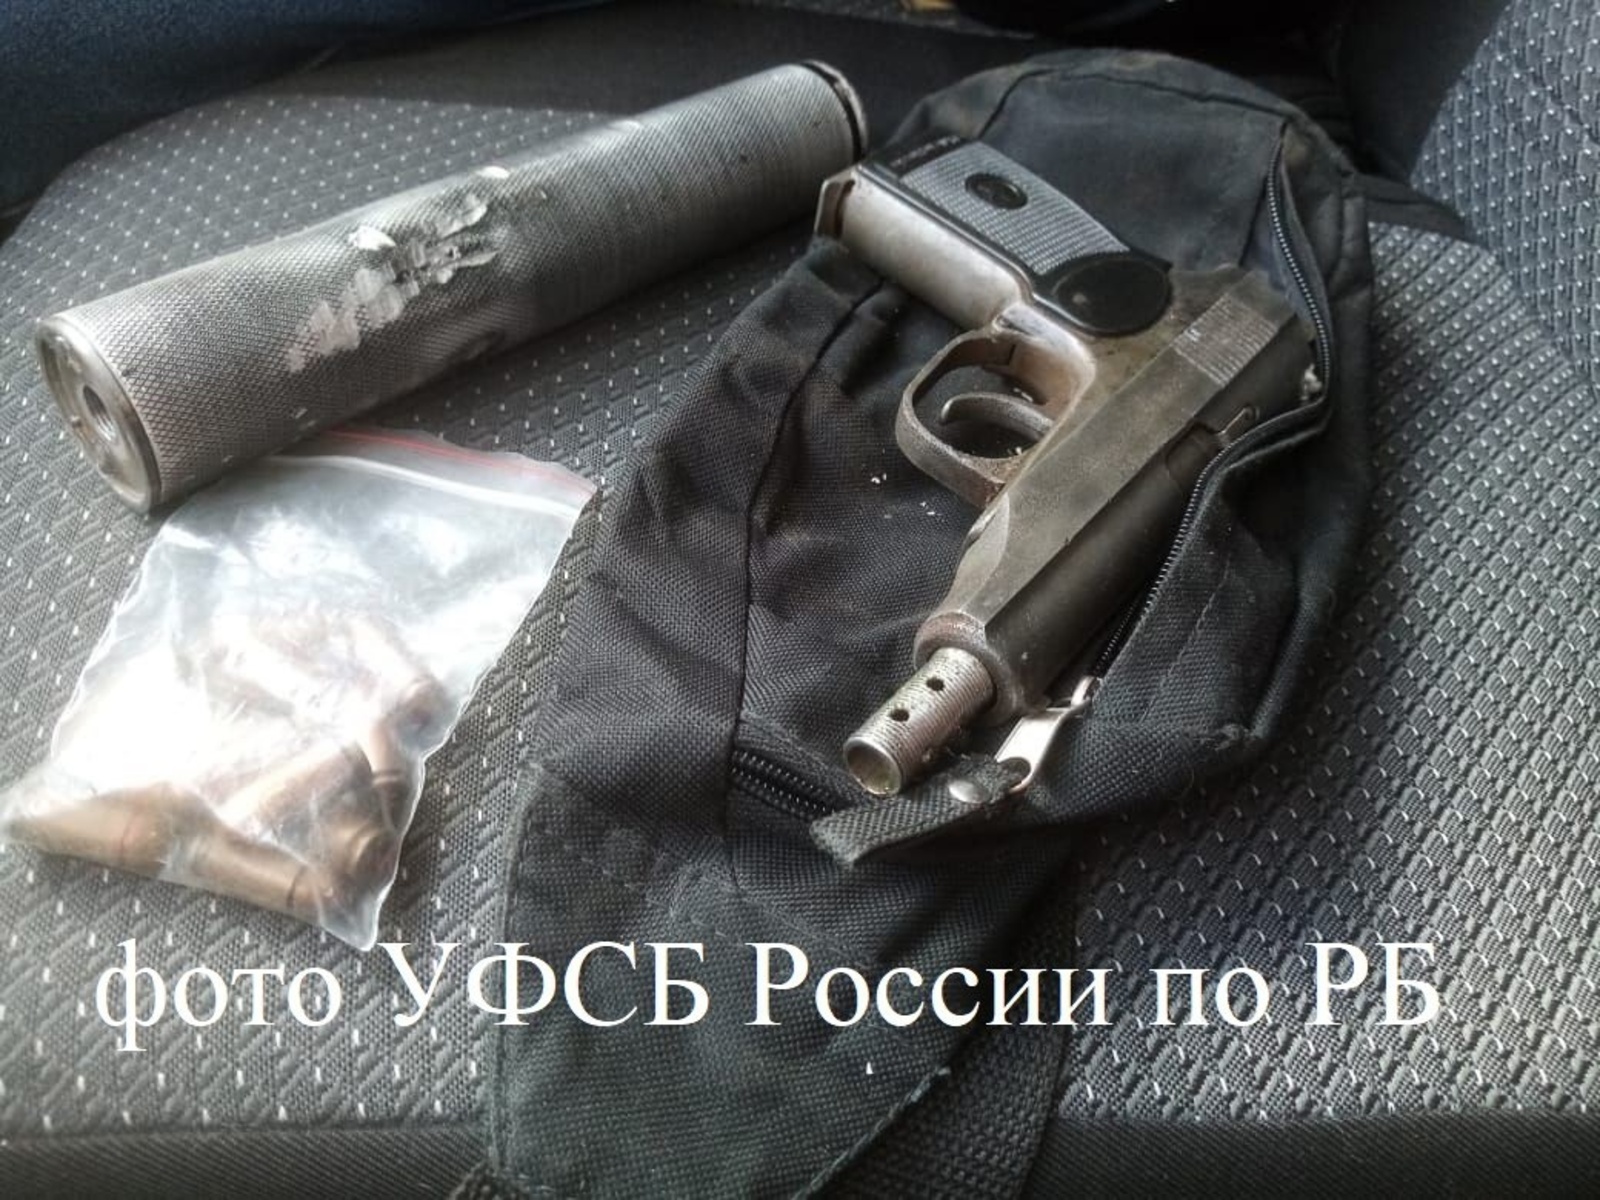 УФСБ России по Республике Башкортостан выявлена и пресечена попытка незаконной продажи огнестрельного оружия и боеприпасов к нему